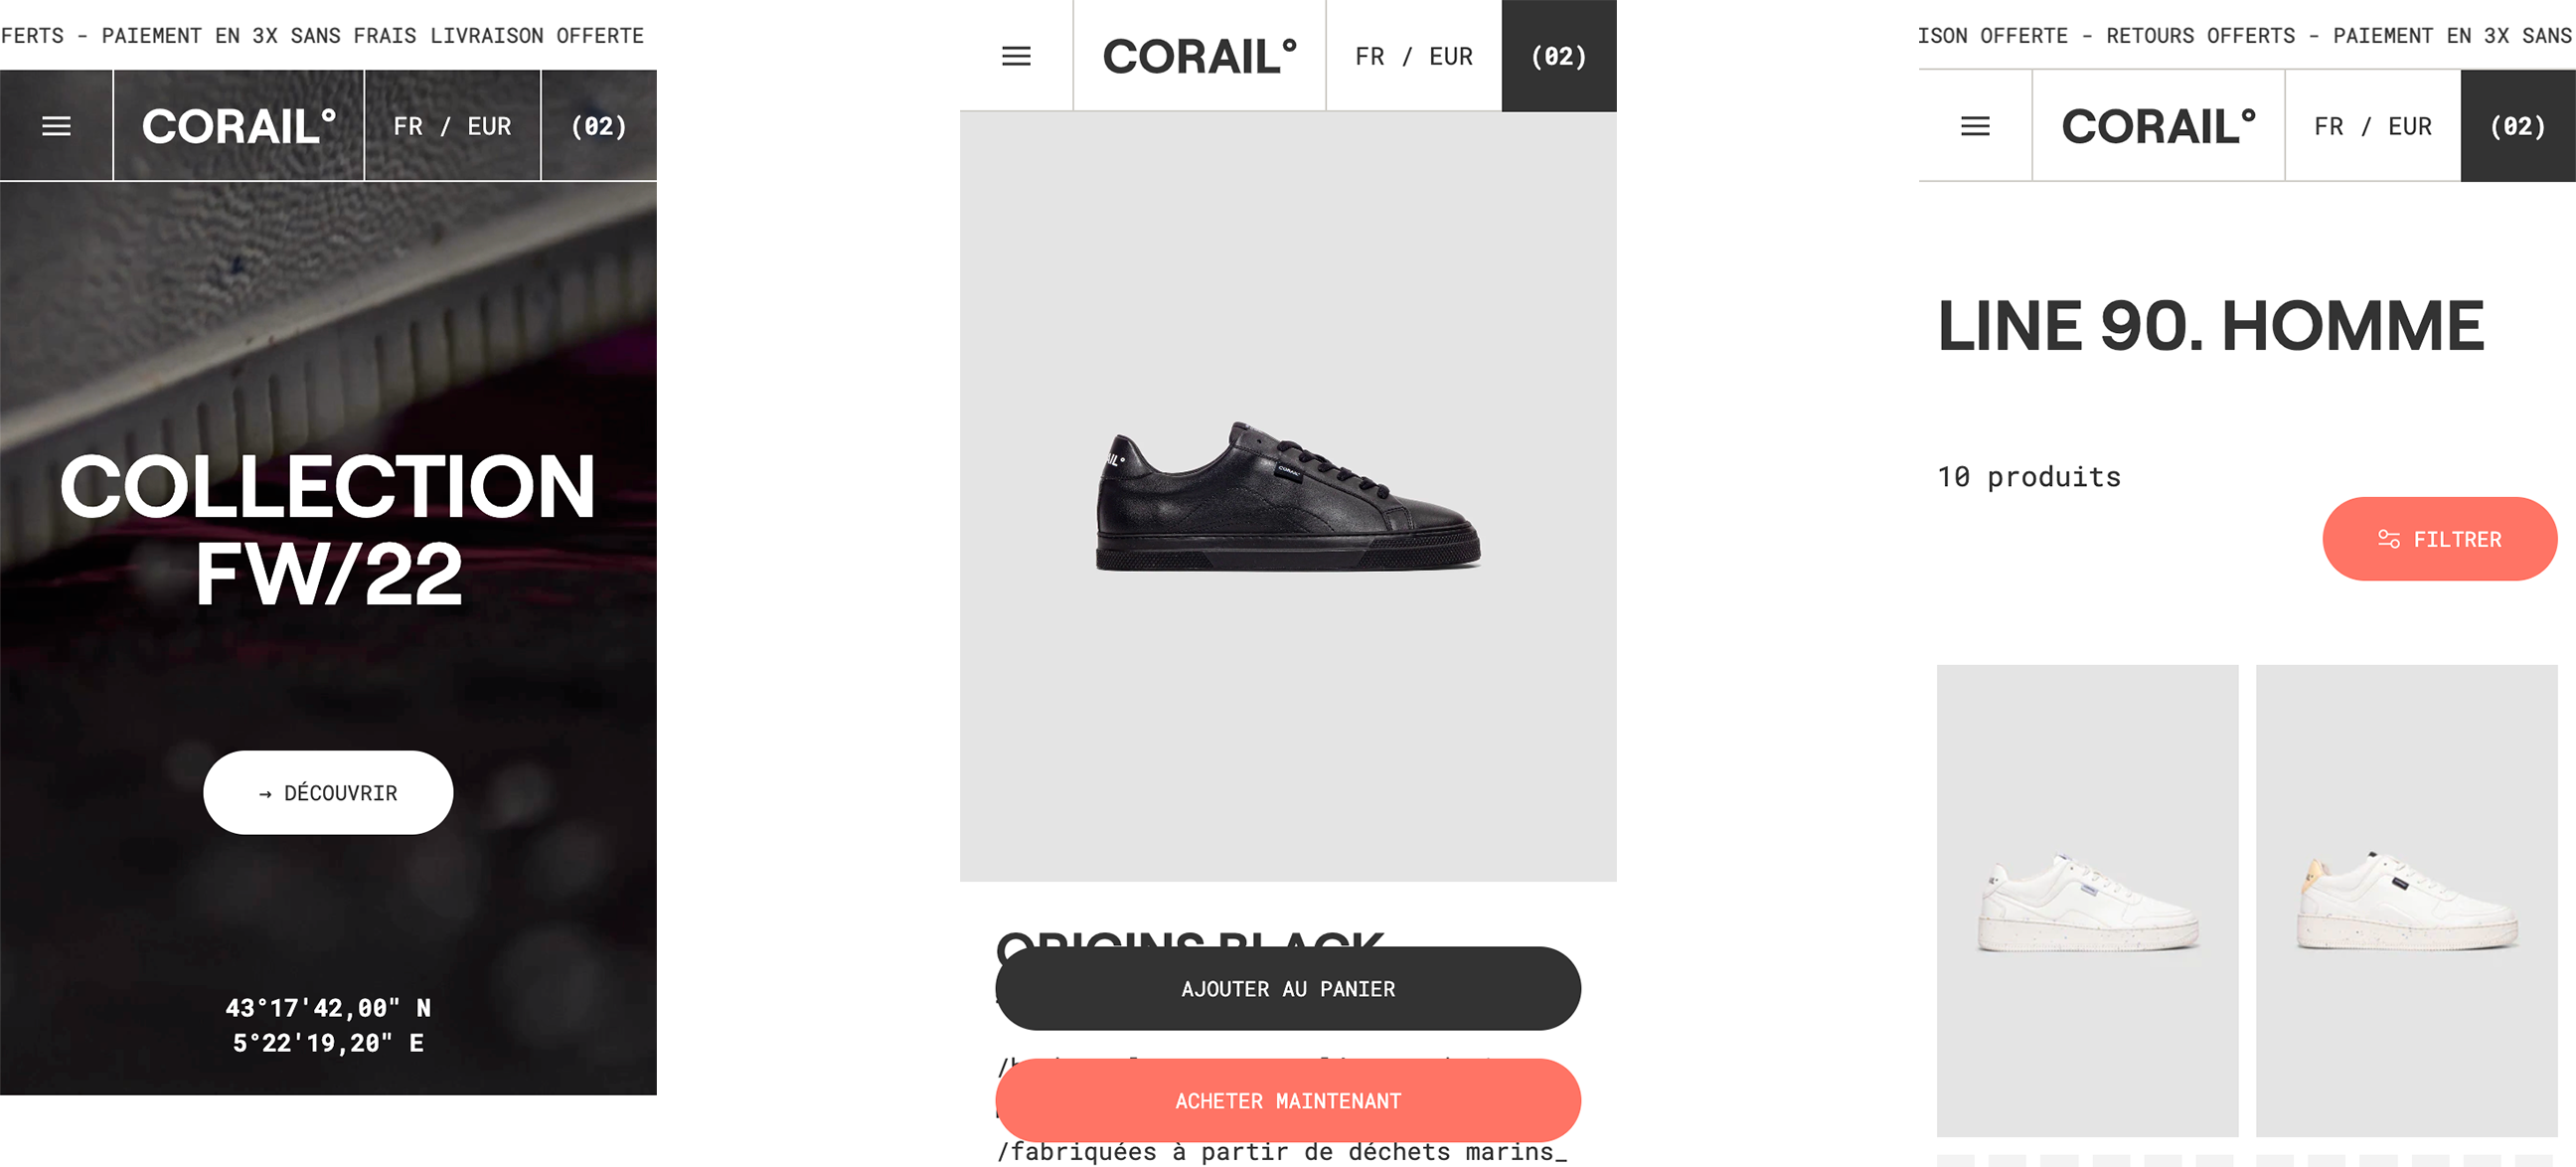 corail-01